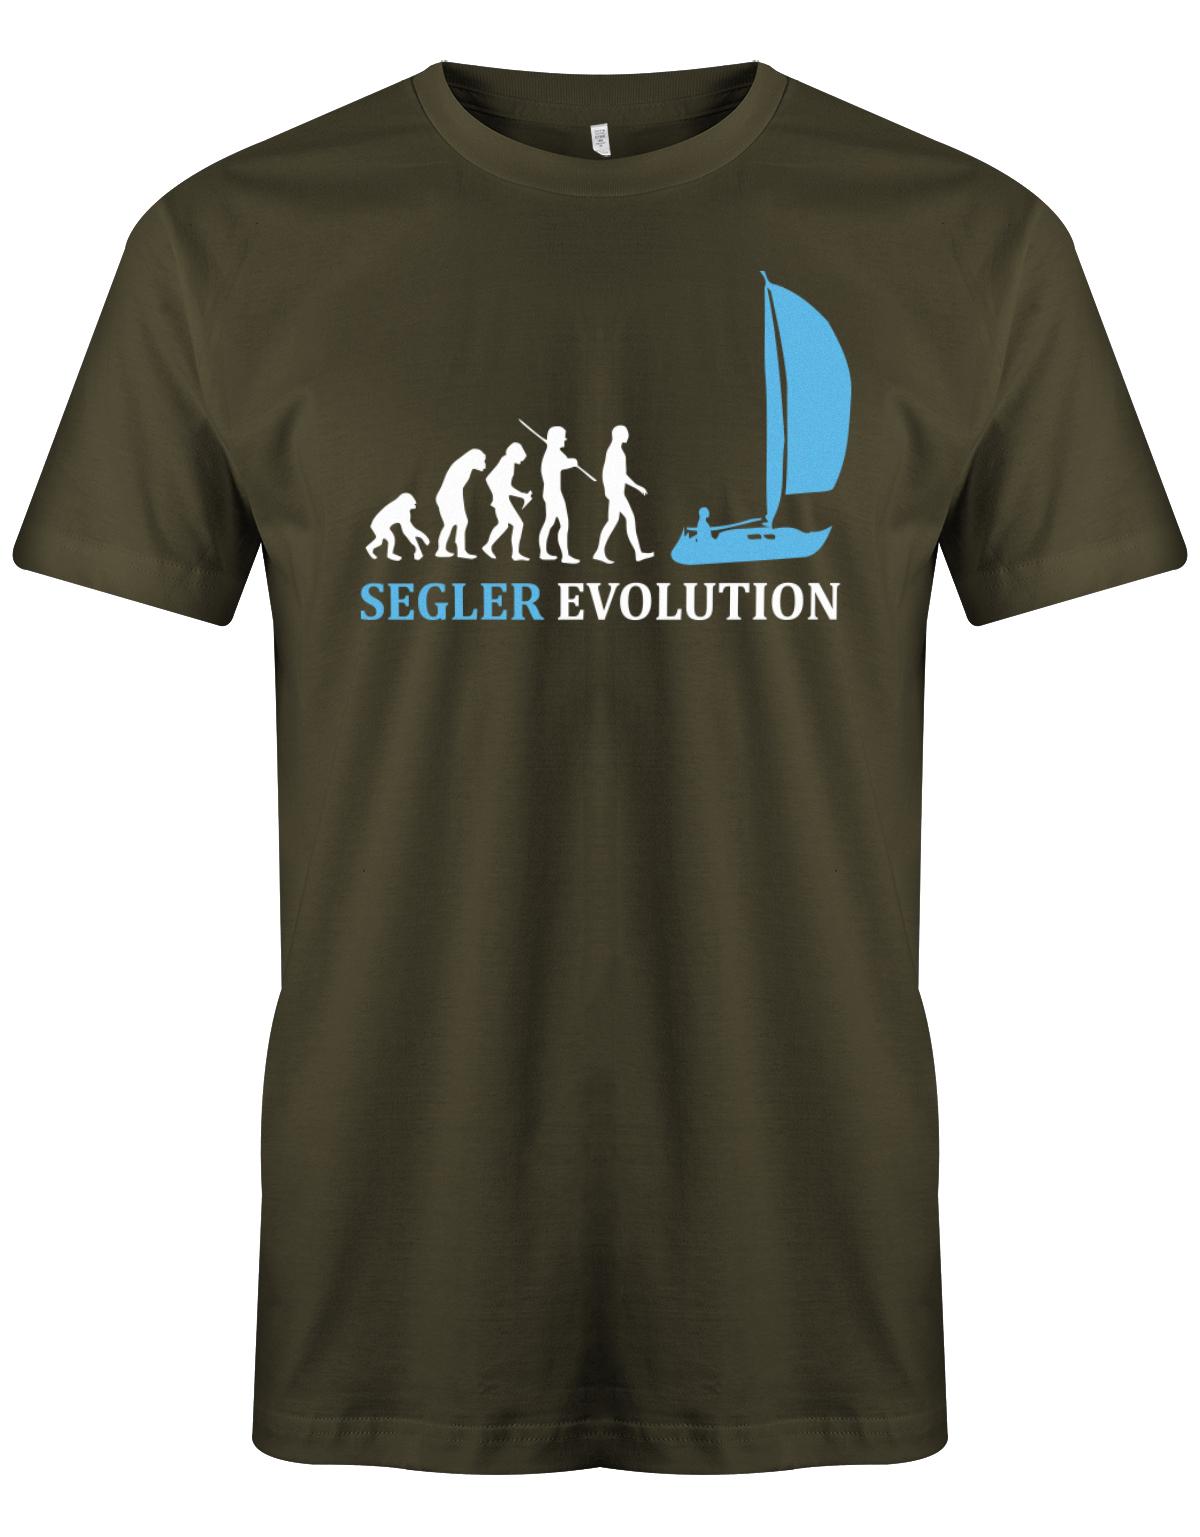 Das Segler t-shirt bedruckt mit "Die Segler Revolution vom Affen zum Segler". Army